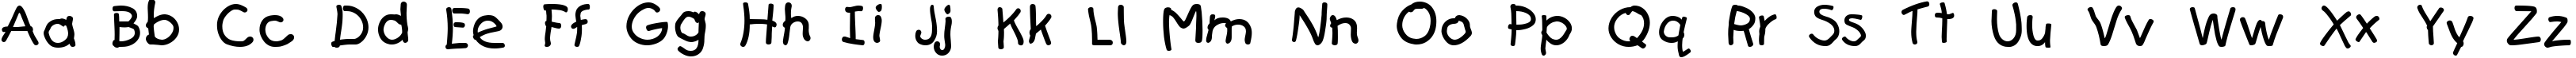 Пример написания английского алфавита шрифтом Teslic`s Document Cyr Normal